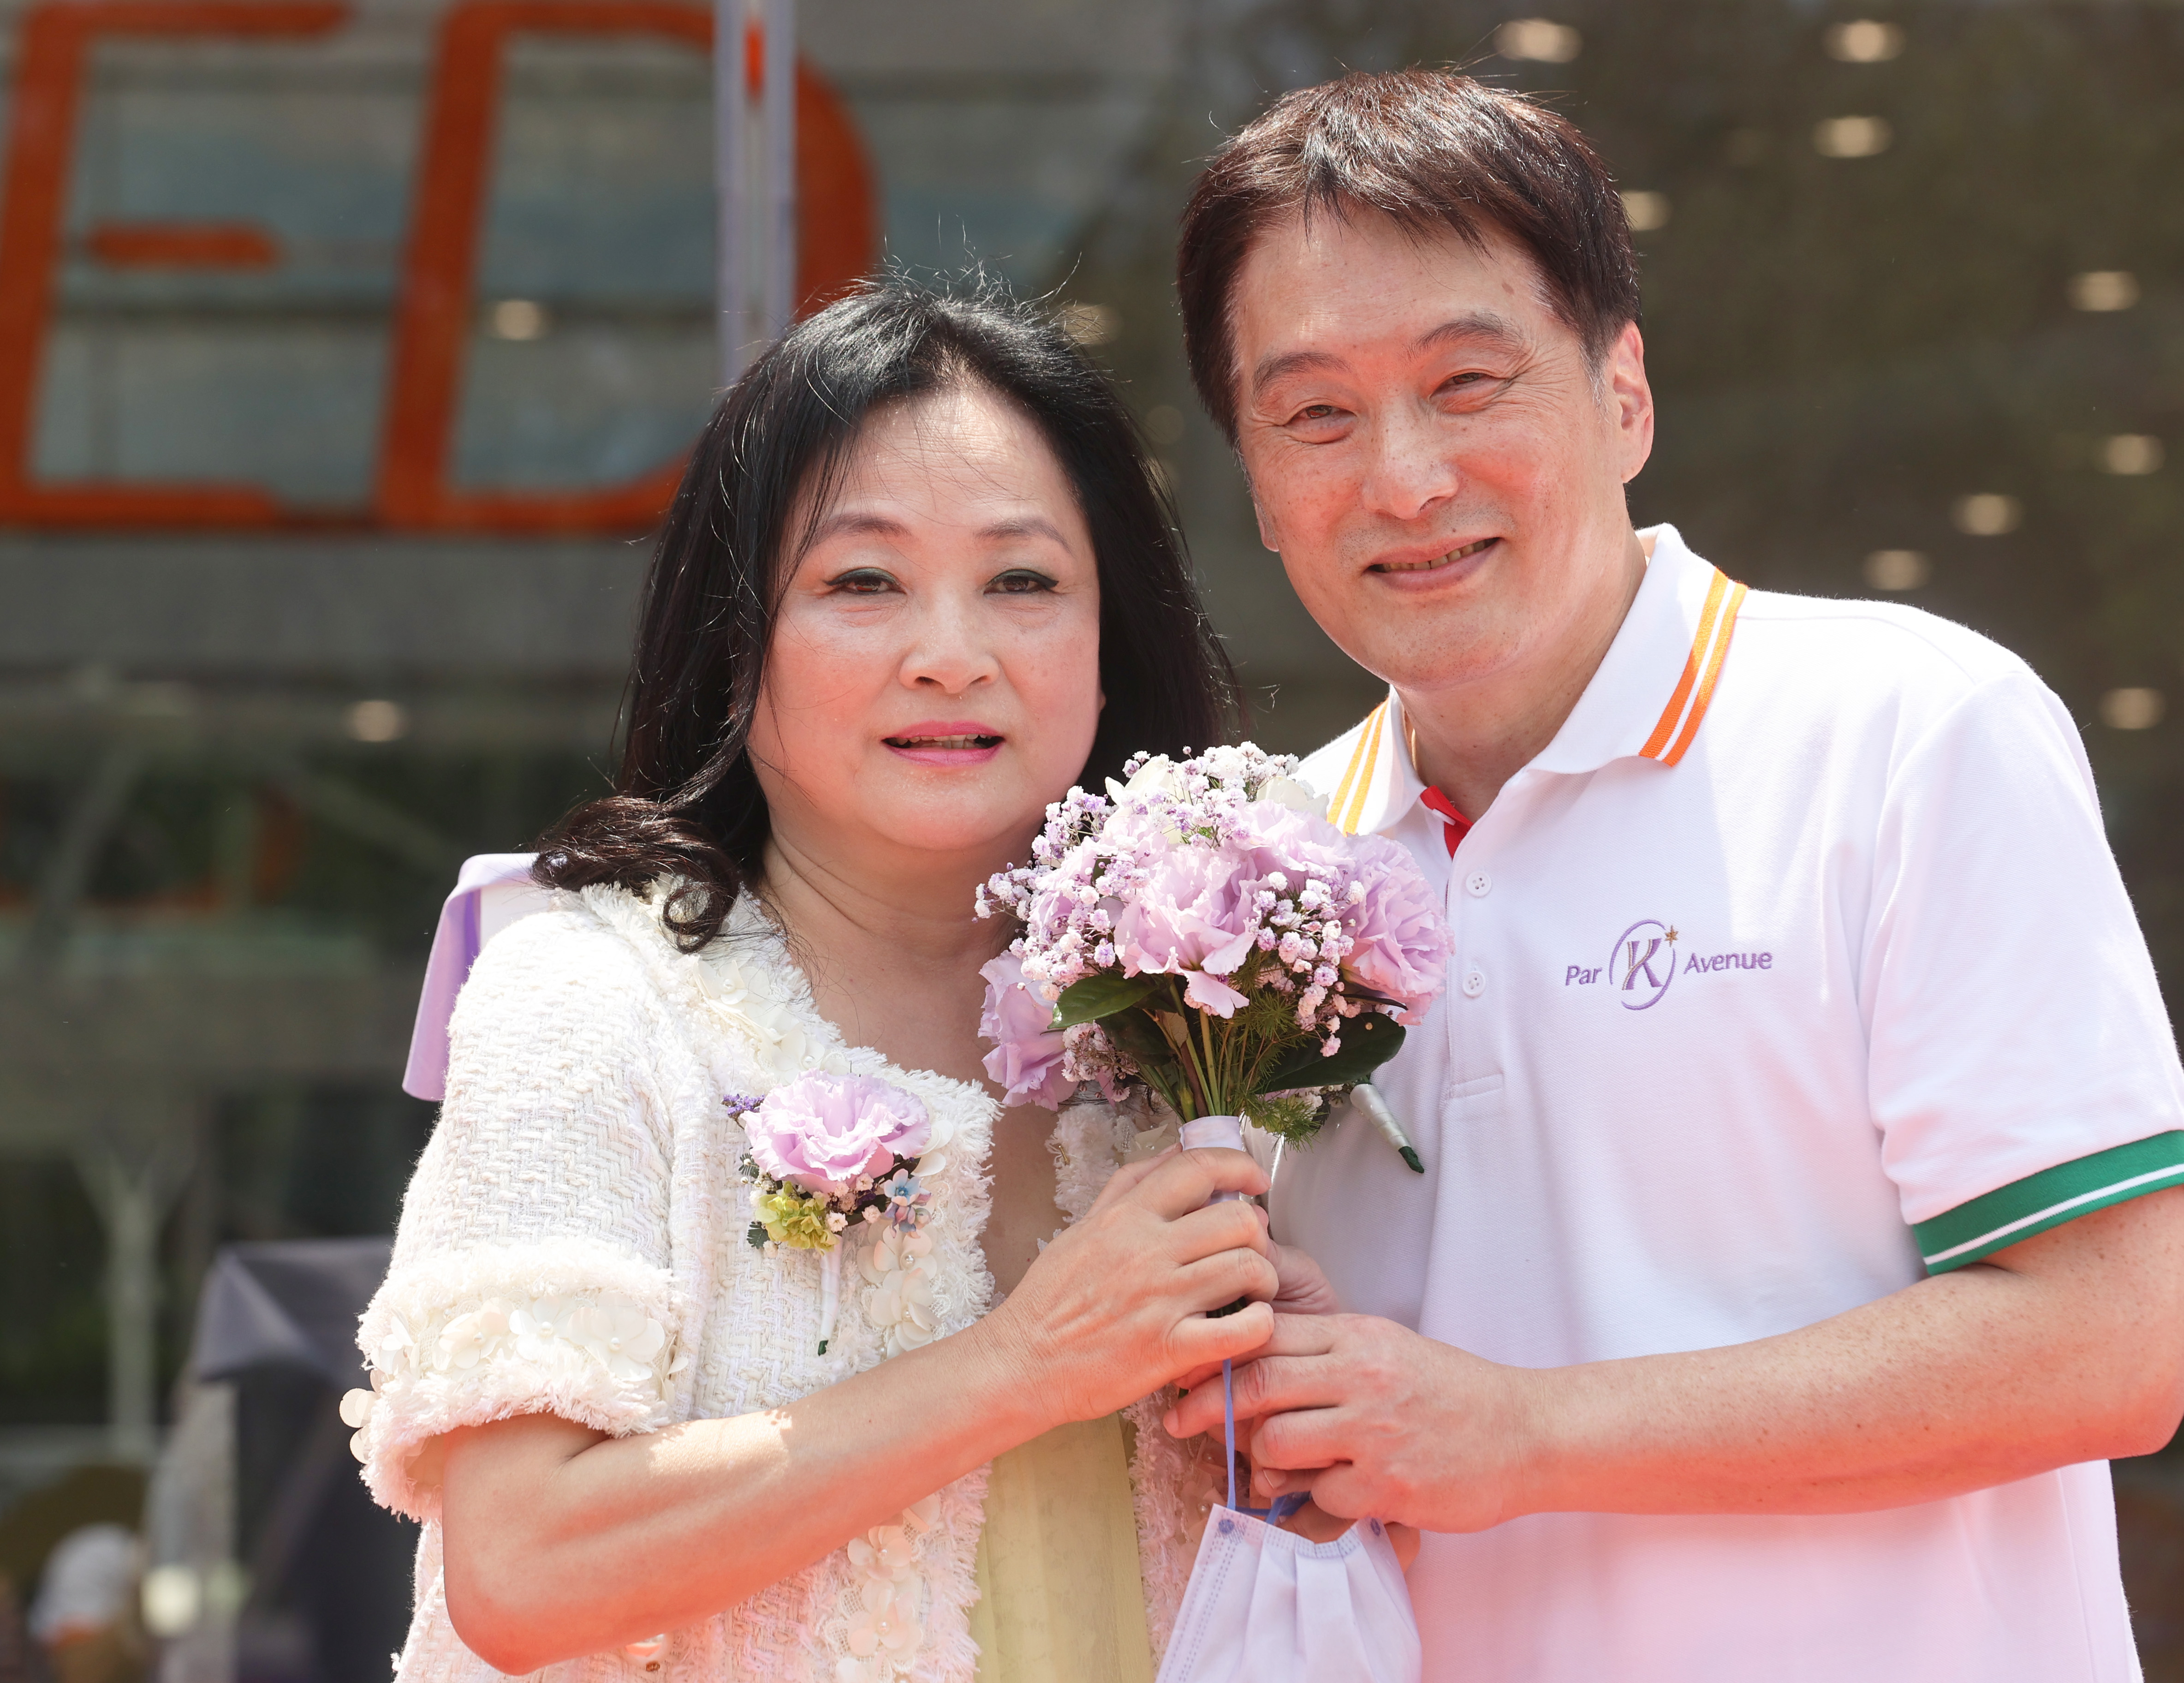 统一董事长罗智先（右）在为复合商场「ParK* Avenue」揭牌后，特别献花给美丽事业董事长高秀玲。记者刘学圣／摄影